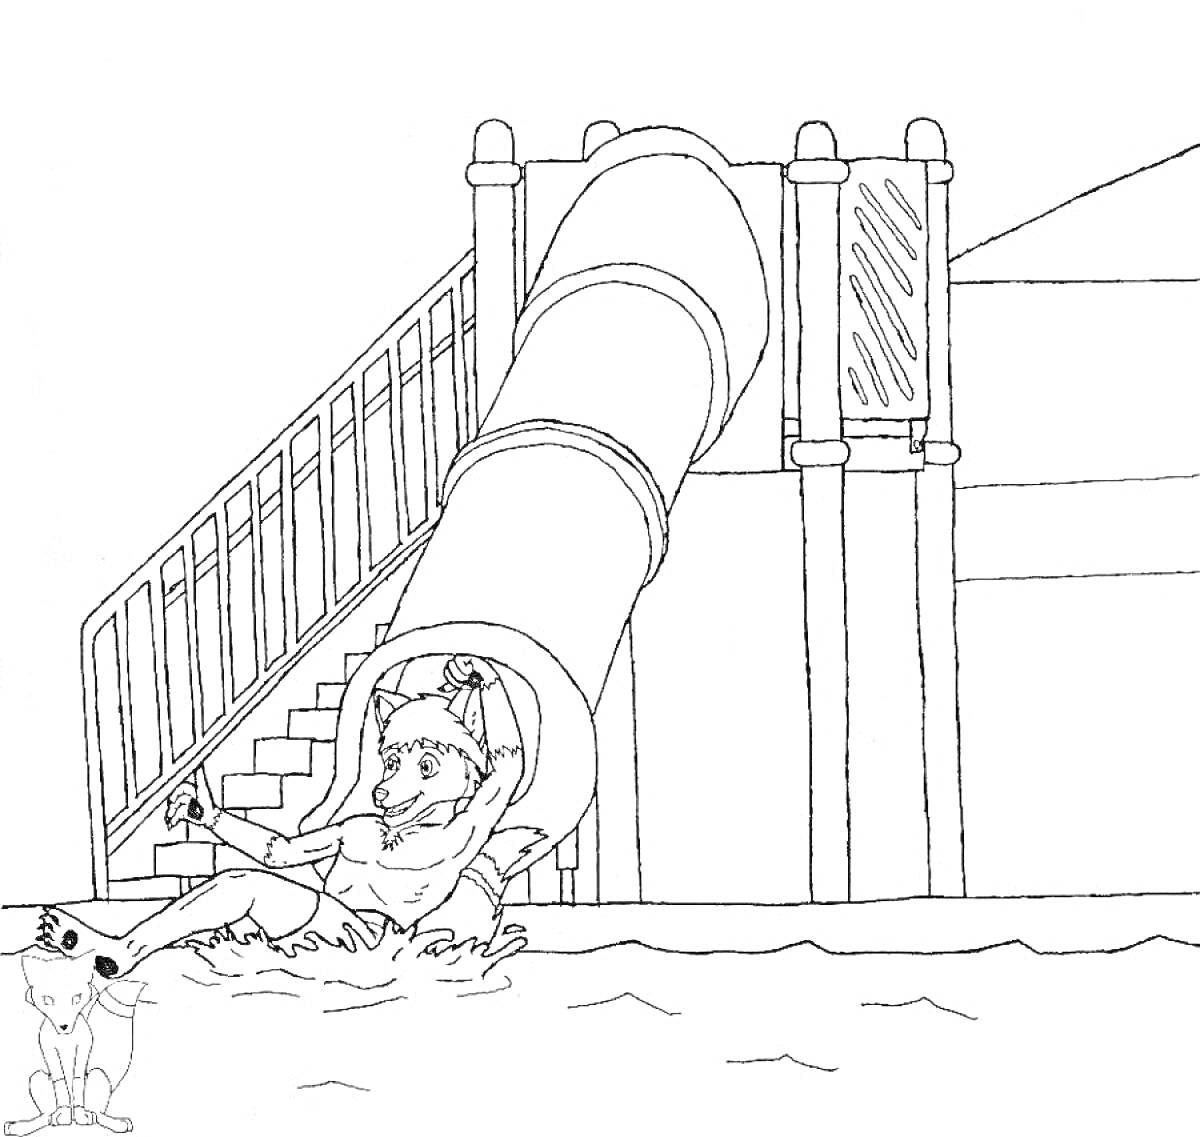 Горка пожиратель, человек в воде, лестница, закрытая водная горка, крыша на заднем плане